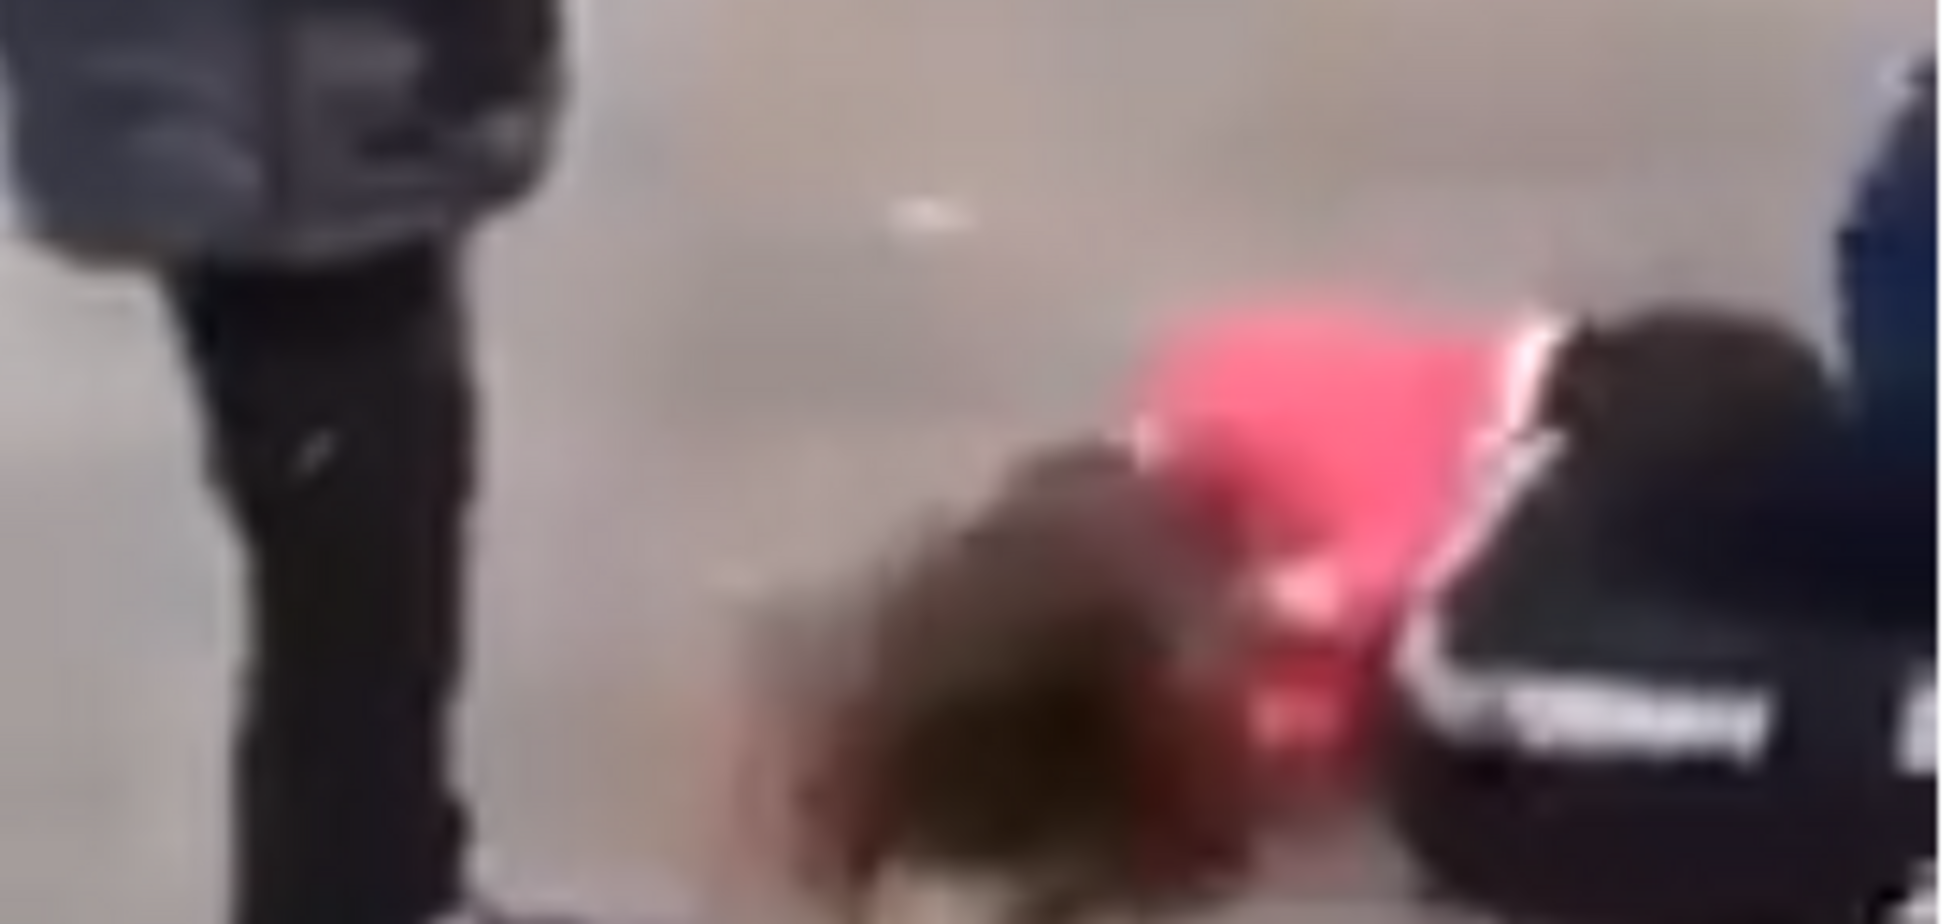  В России 14-летнюю школьницу зверски избили сверстники и сделали бесплодной: видео 18+ 